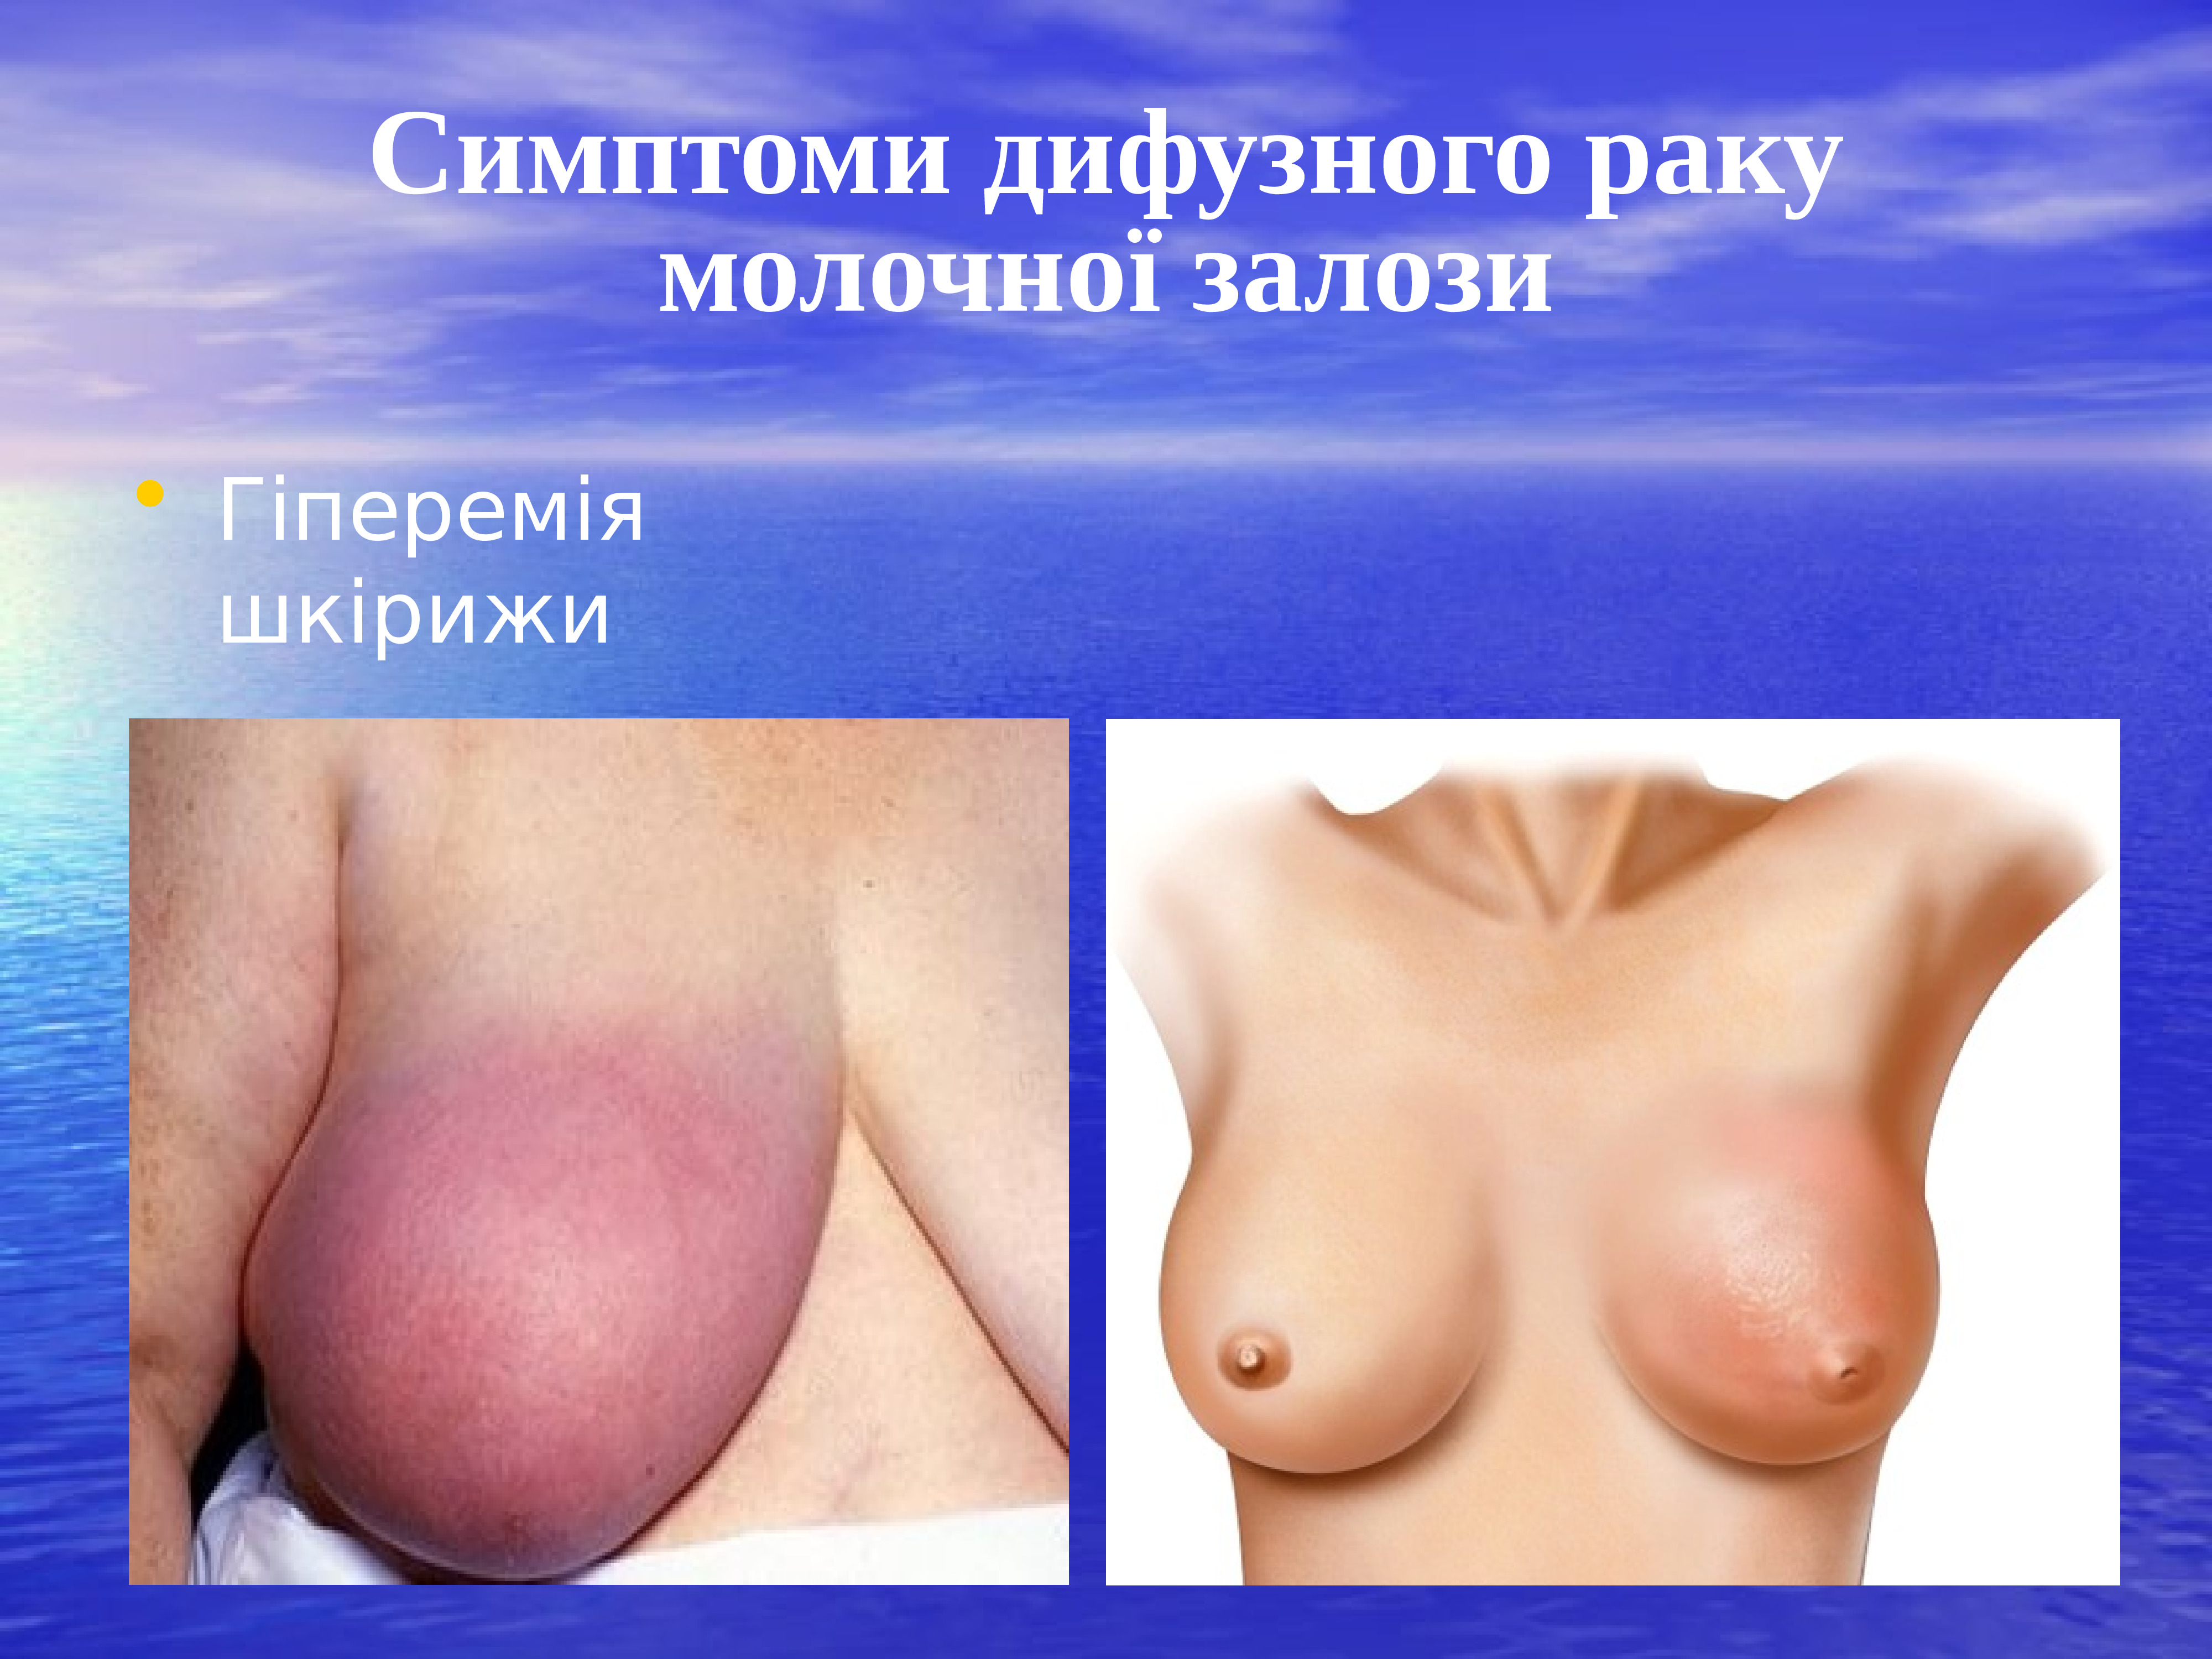 первые признаки онкологии груди у женщин фото 77